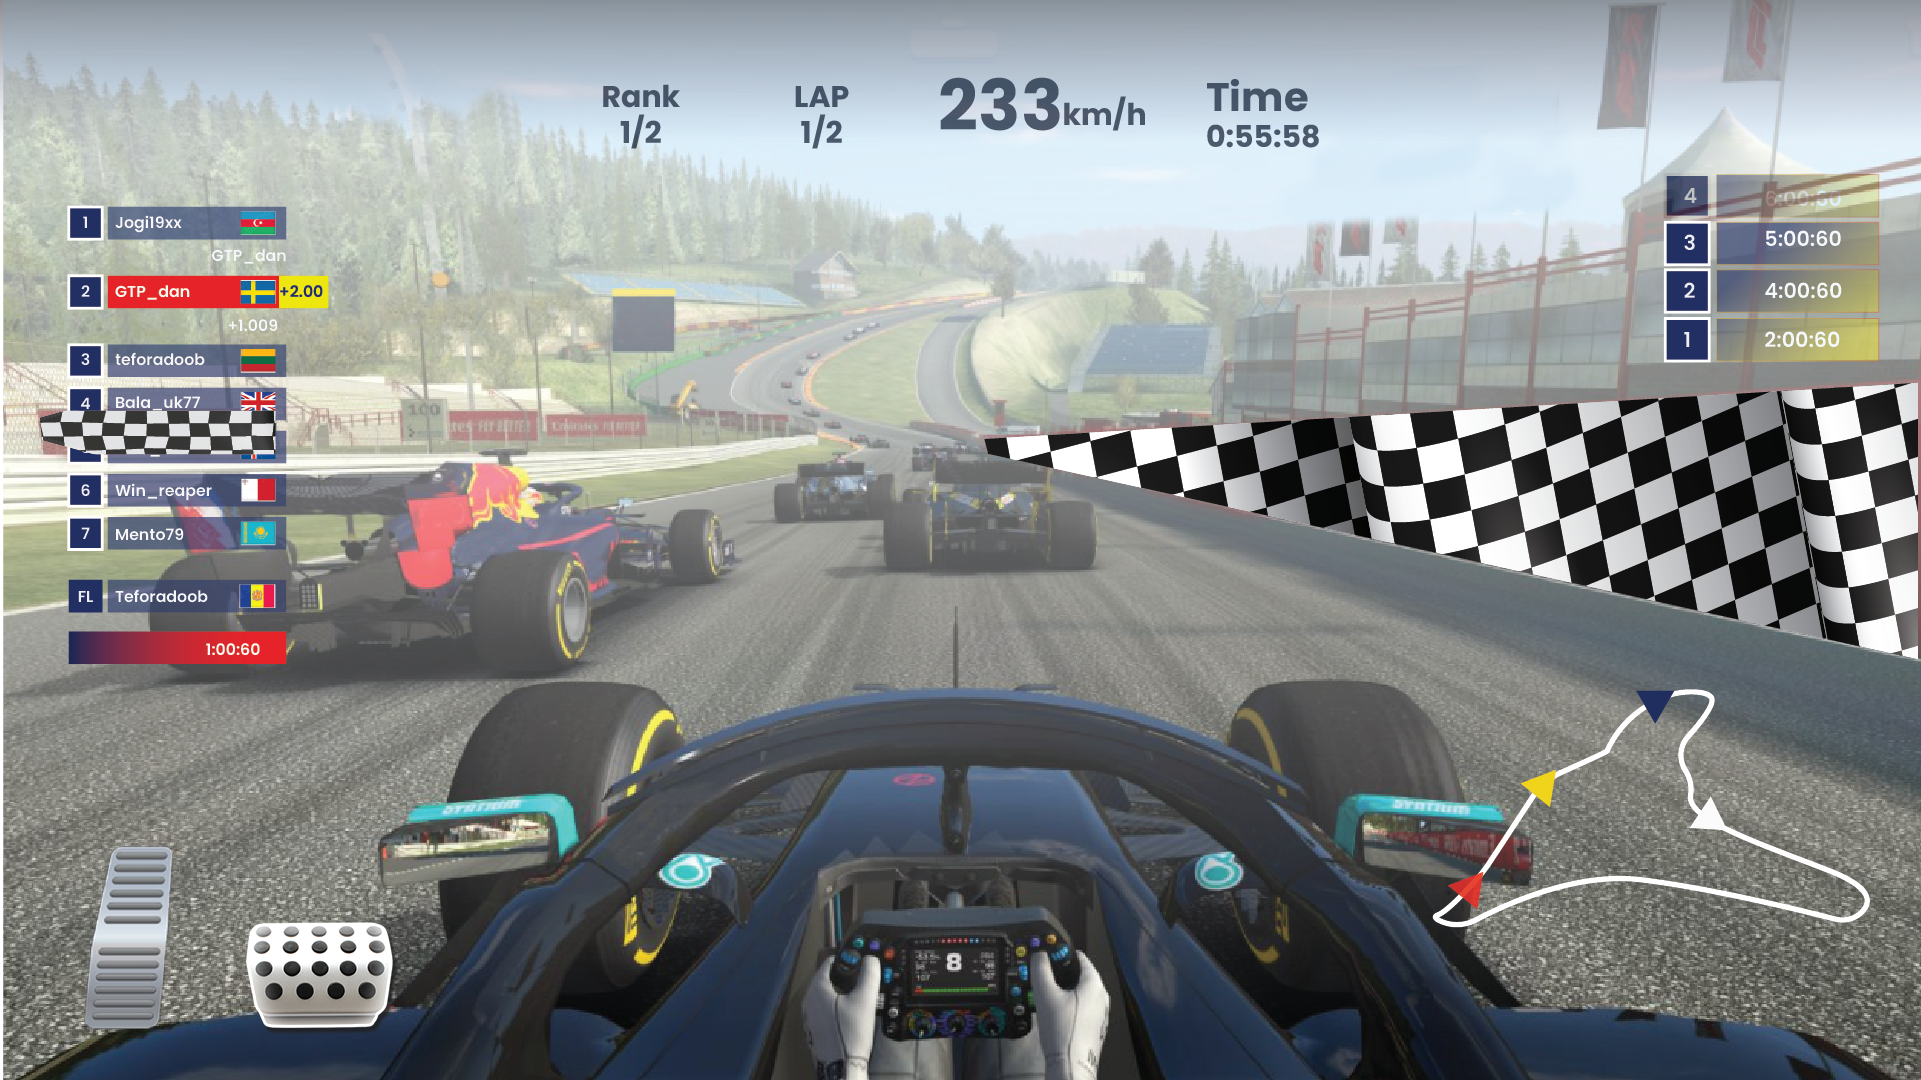 Screenshot 1 of Formula Car Games Racing Games 1.1